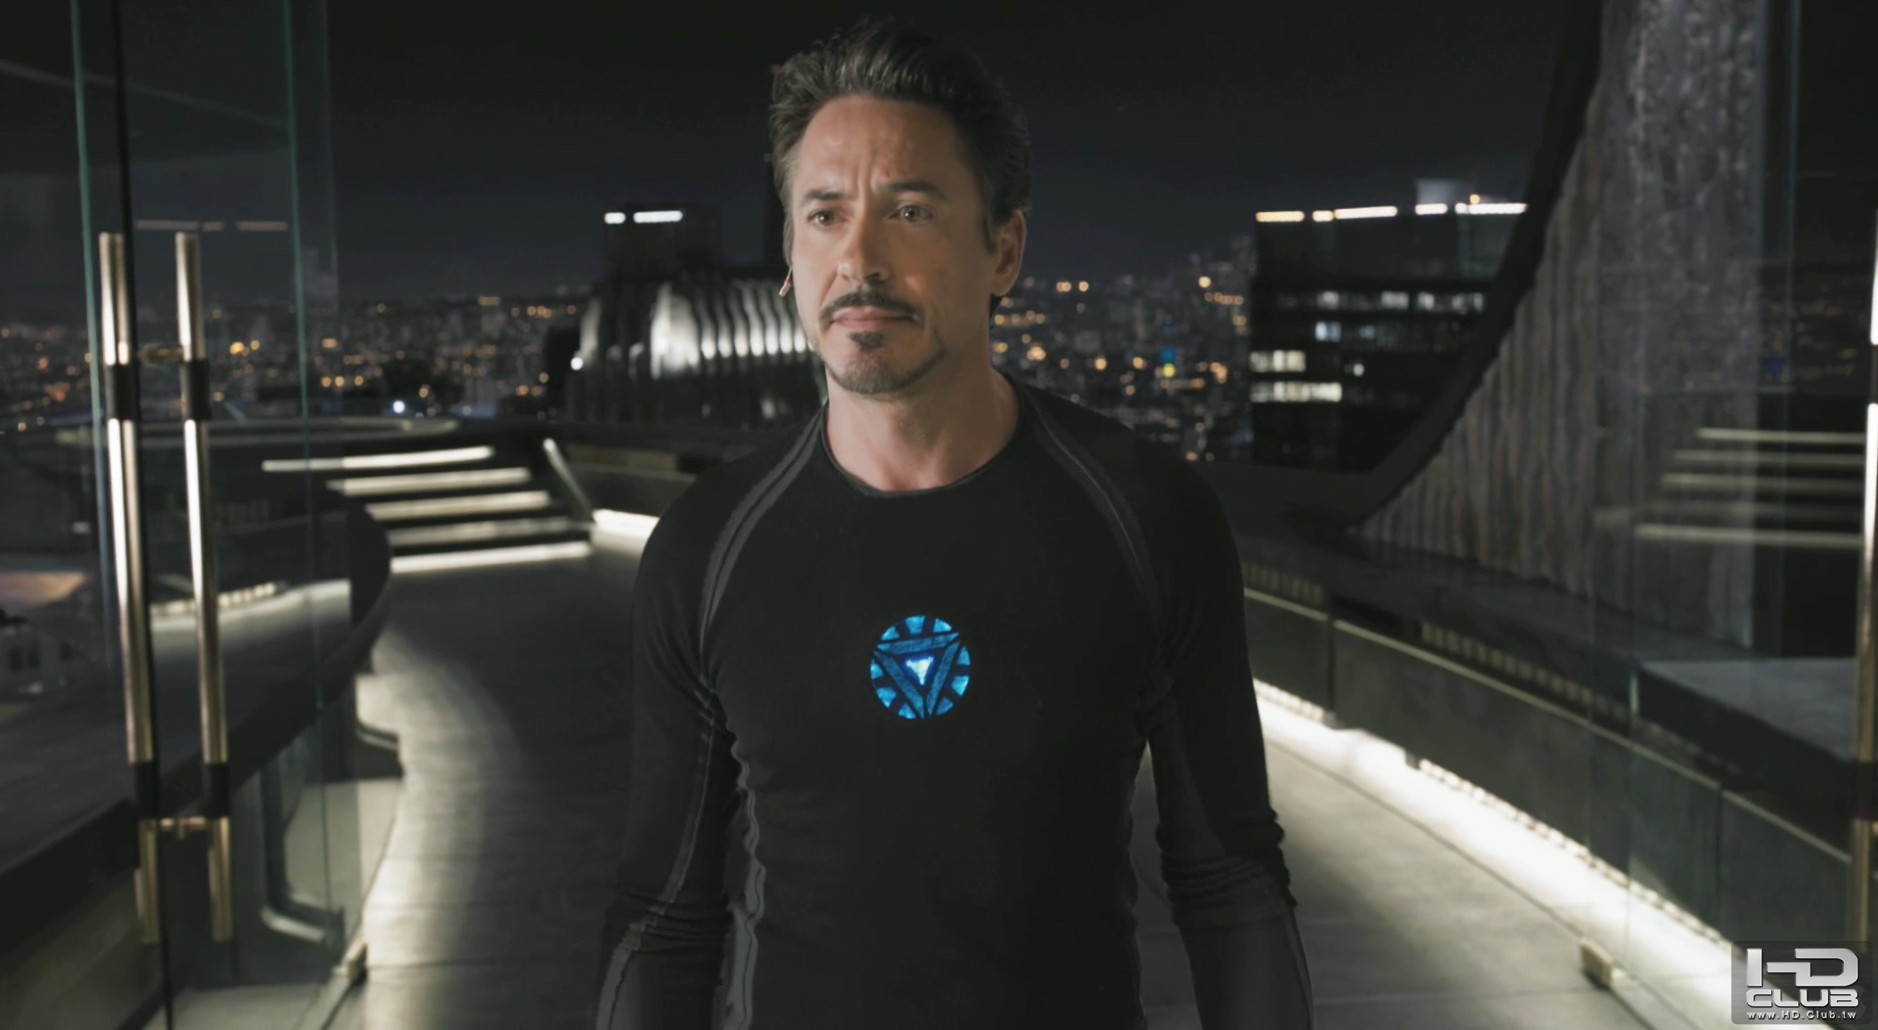 Robert-Downey-Jr-The-Avengers-Iron-Man-3.jpg